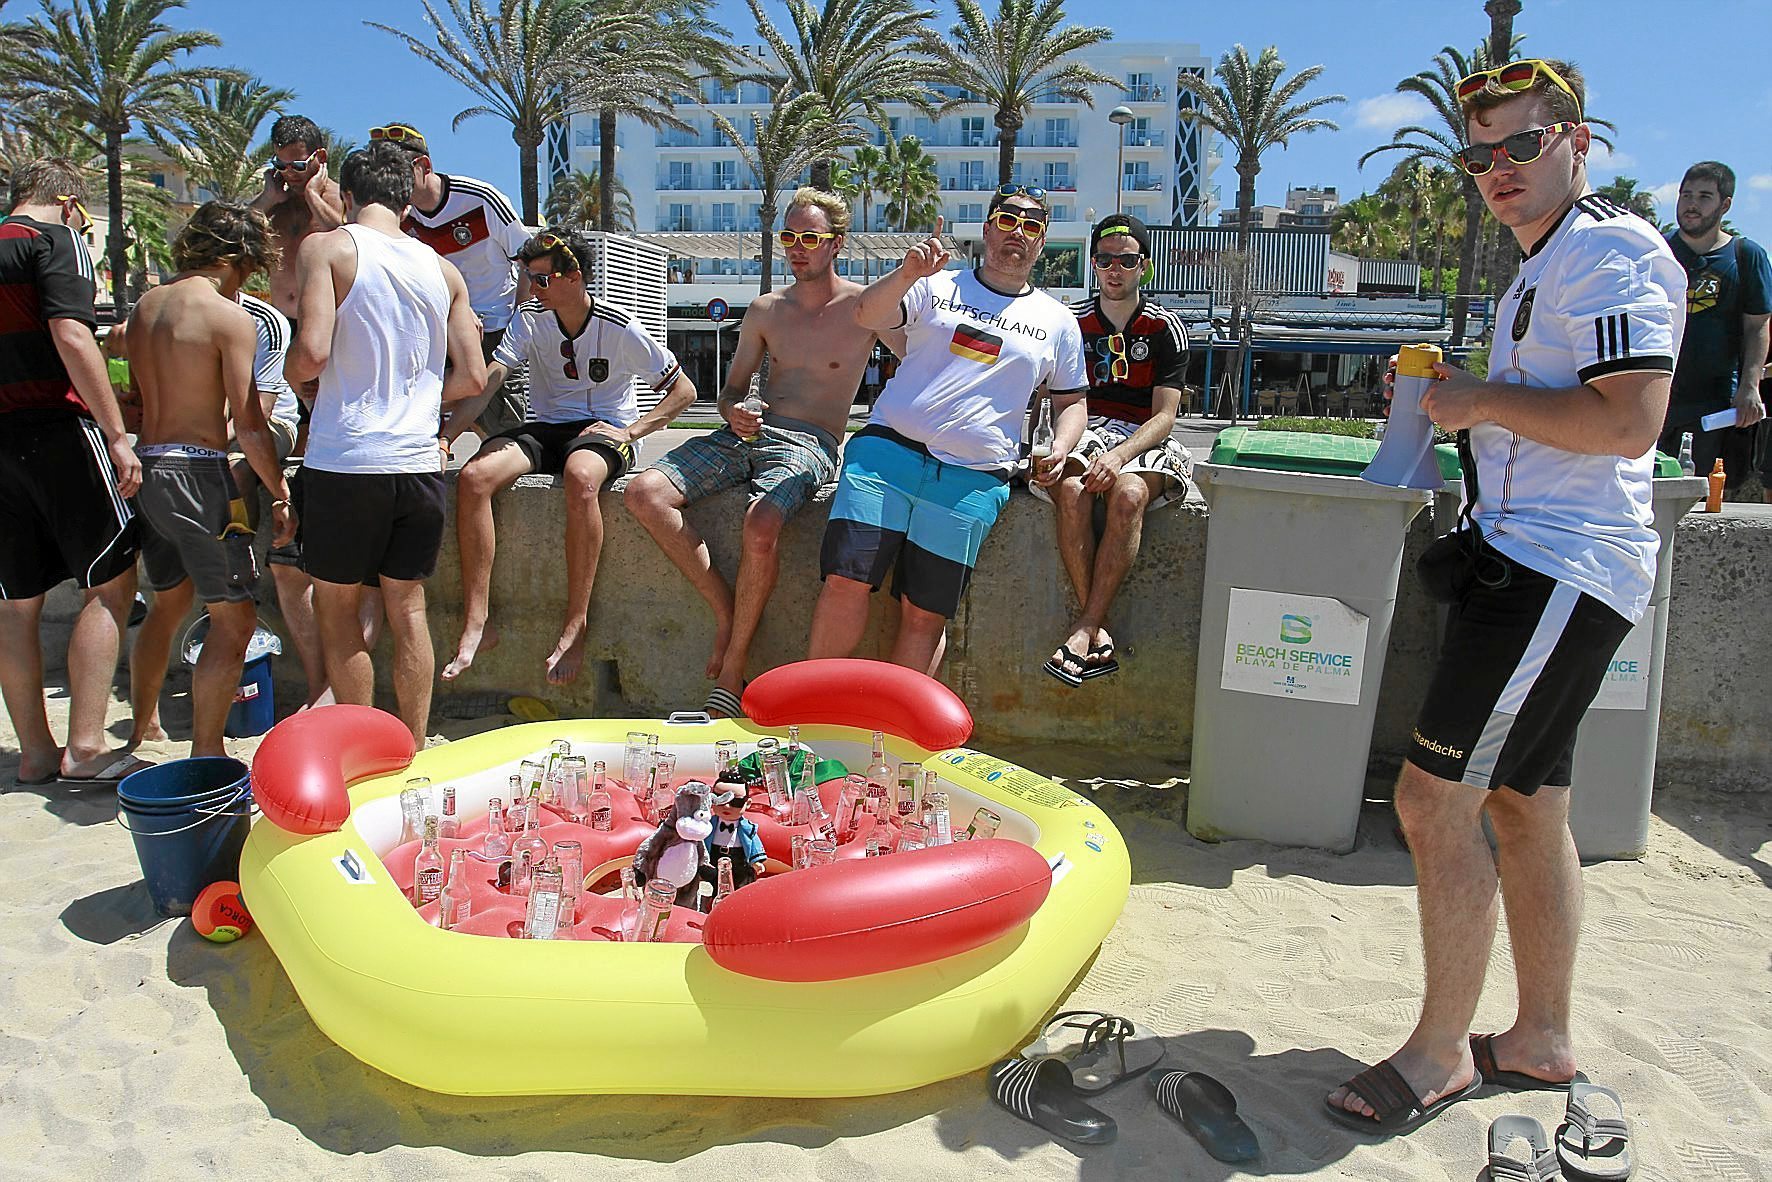 Turistas alemanes consumiendo alcohol en Playa de Palma.